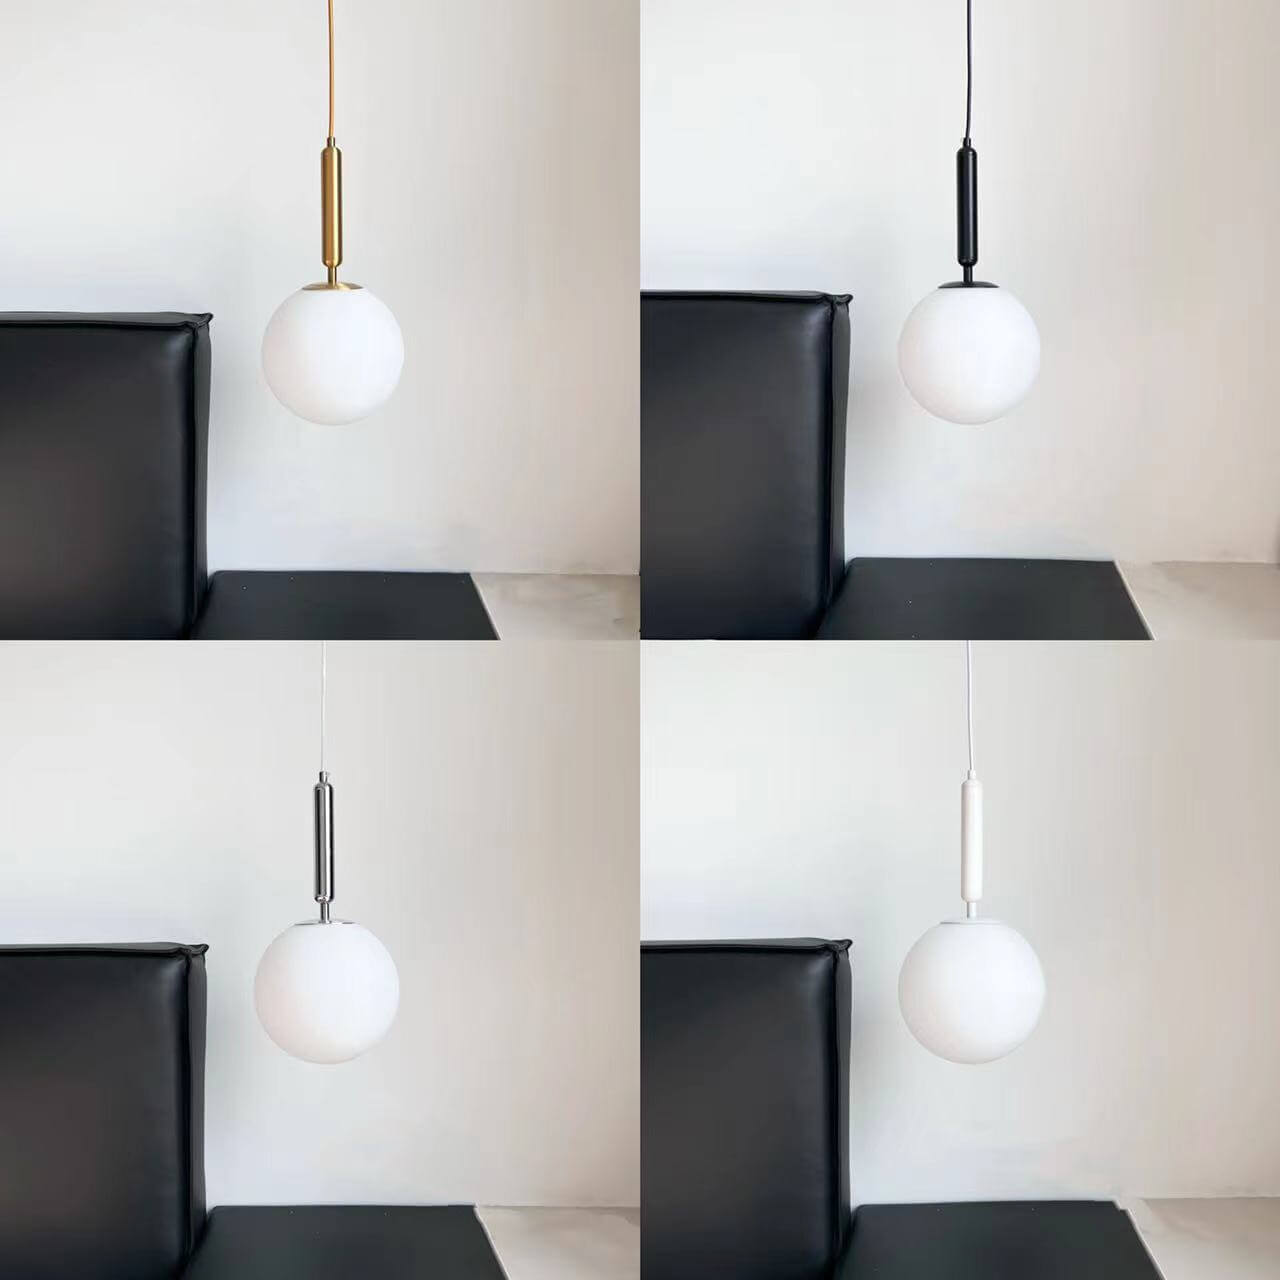 Modern Glass Ball LED Light Fixtures - Luminaire Kitchen Hanging Lights